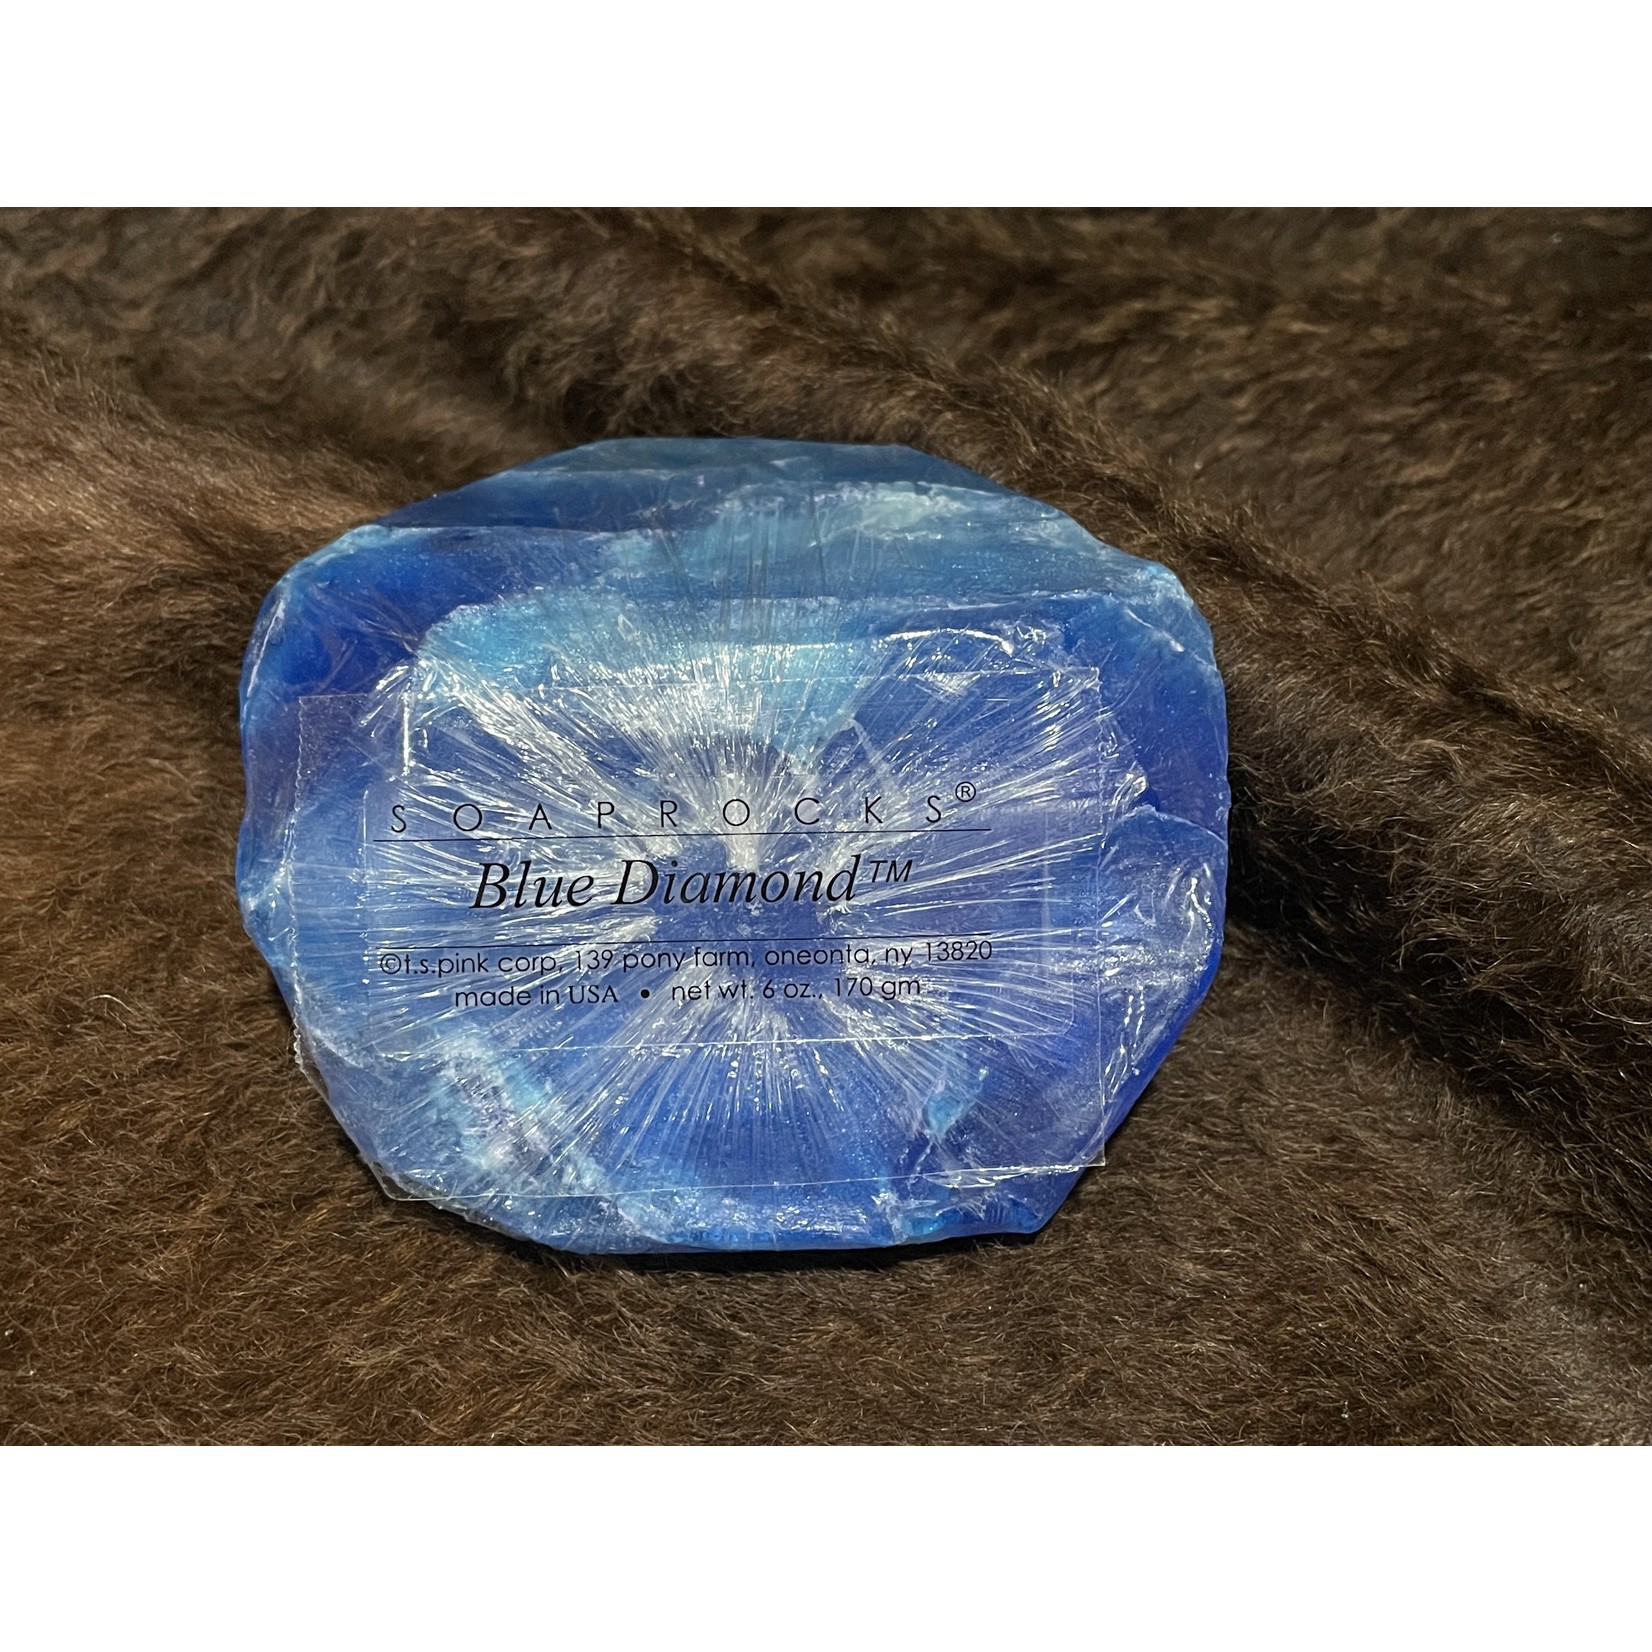 Soap Rocks (Amethyst- Fire Opal)